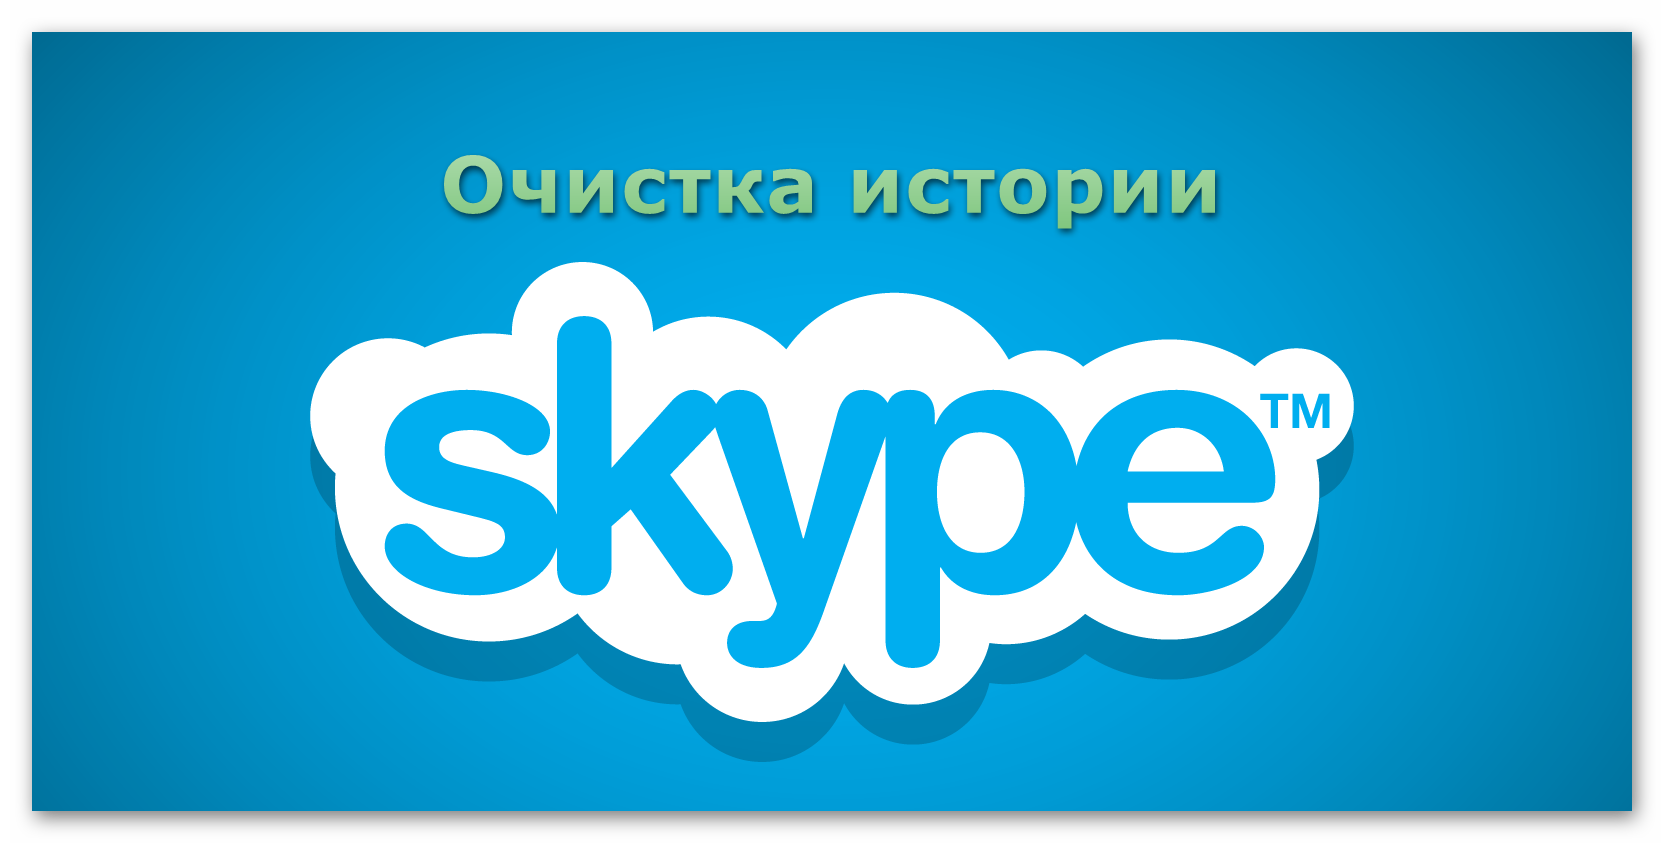 Картинка Очистка истории Skype